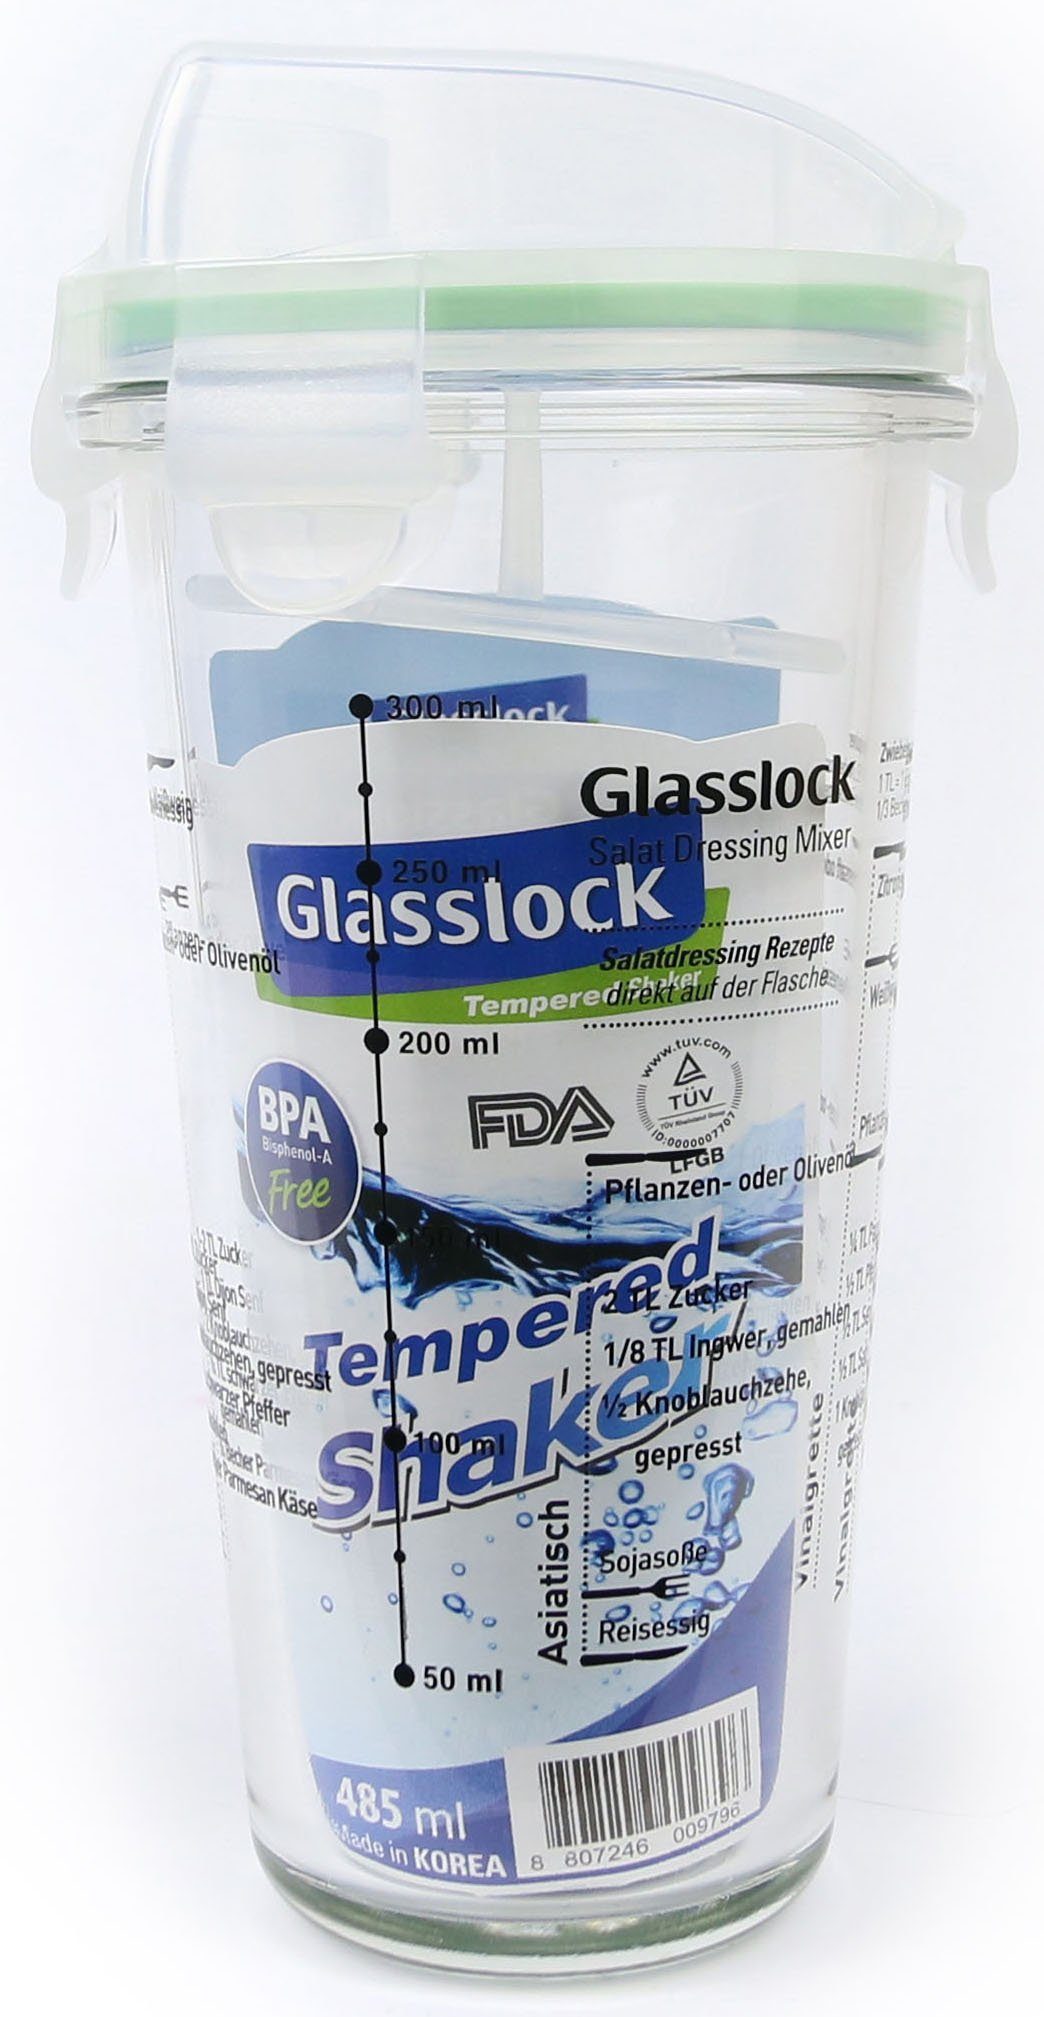 Glasslock Dressing (Cocktail 450 Shaker), ml Shaker, Glas